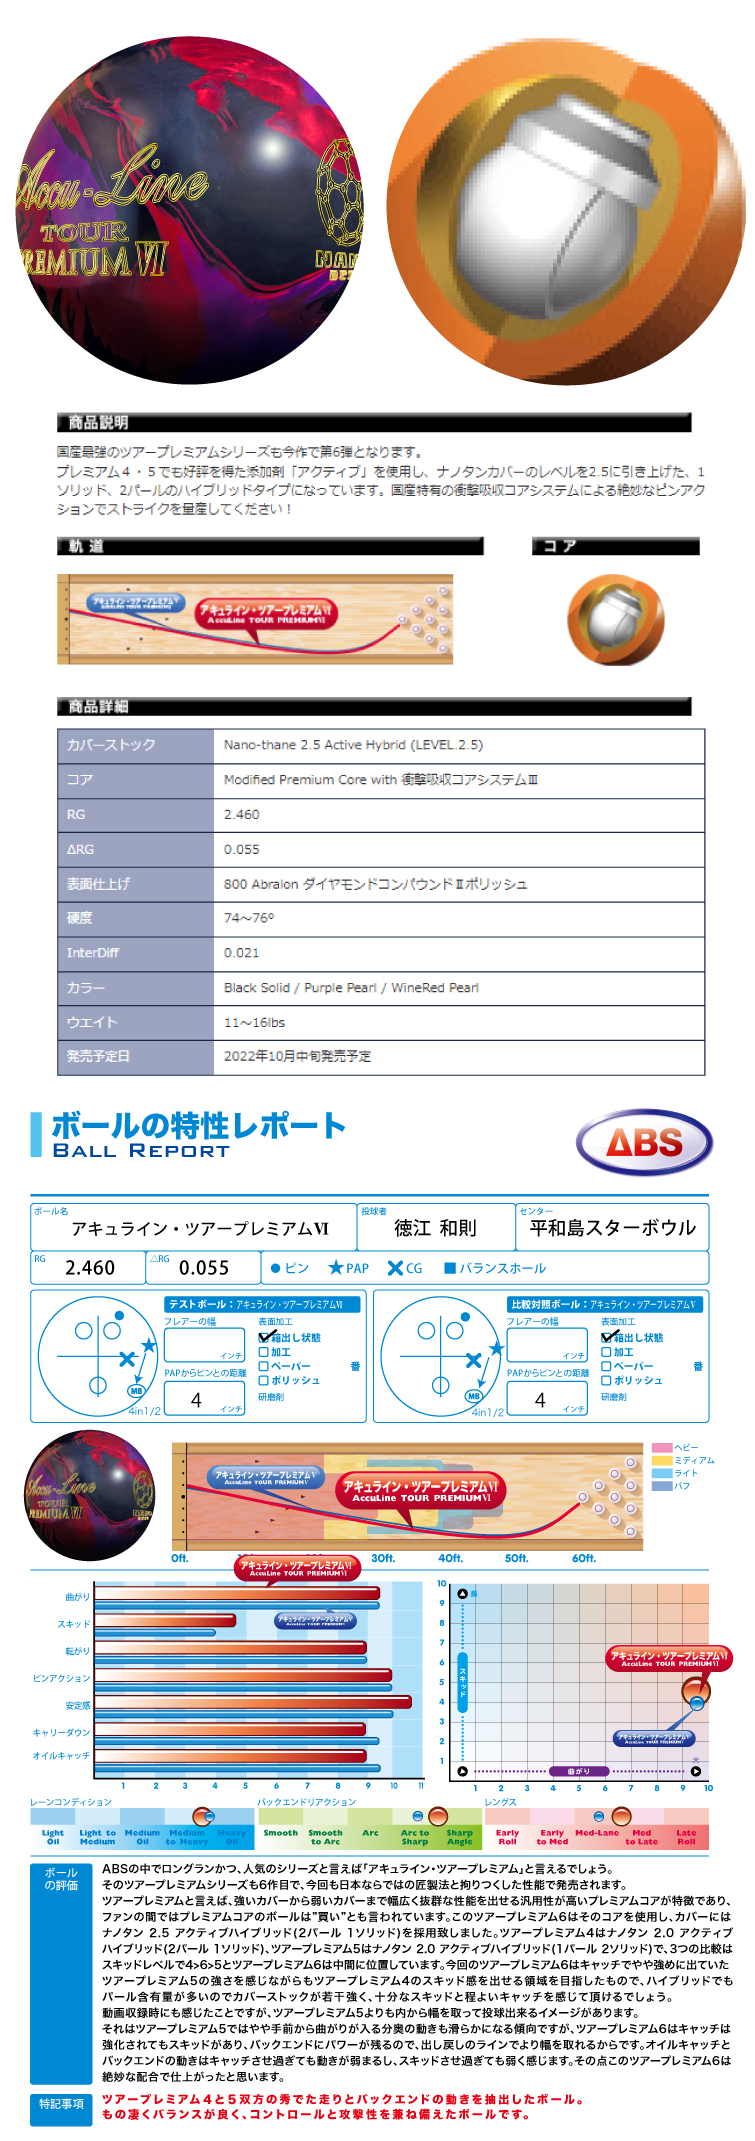 ボウリング用品 ボウリングボール　ABS　ナノデス・アキュラインツアープレミアム6　Accu Line TOUR PREMIUM  